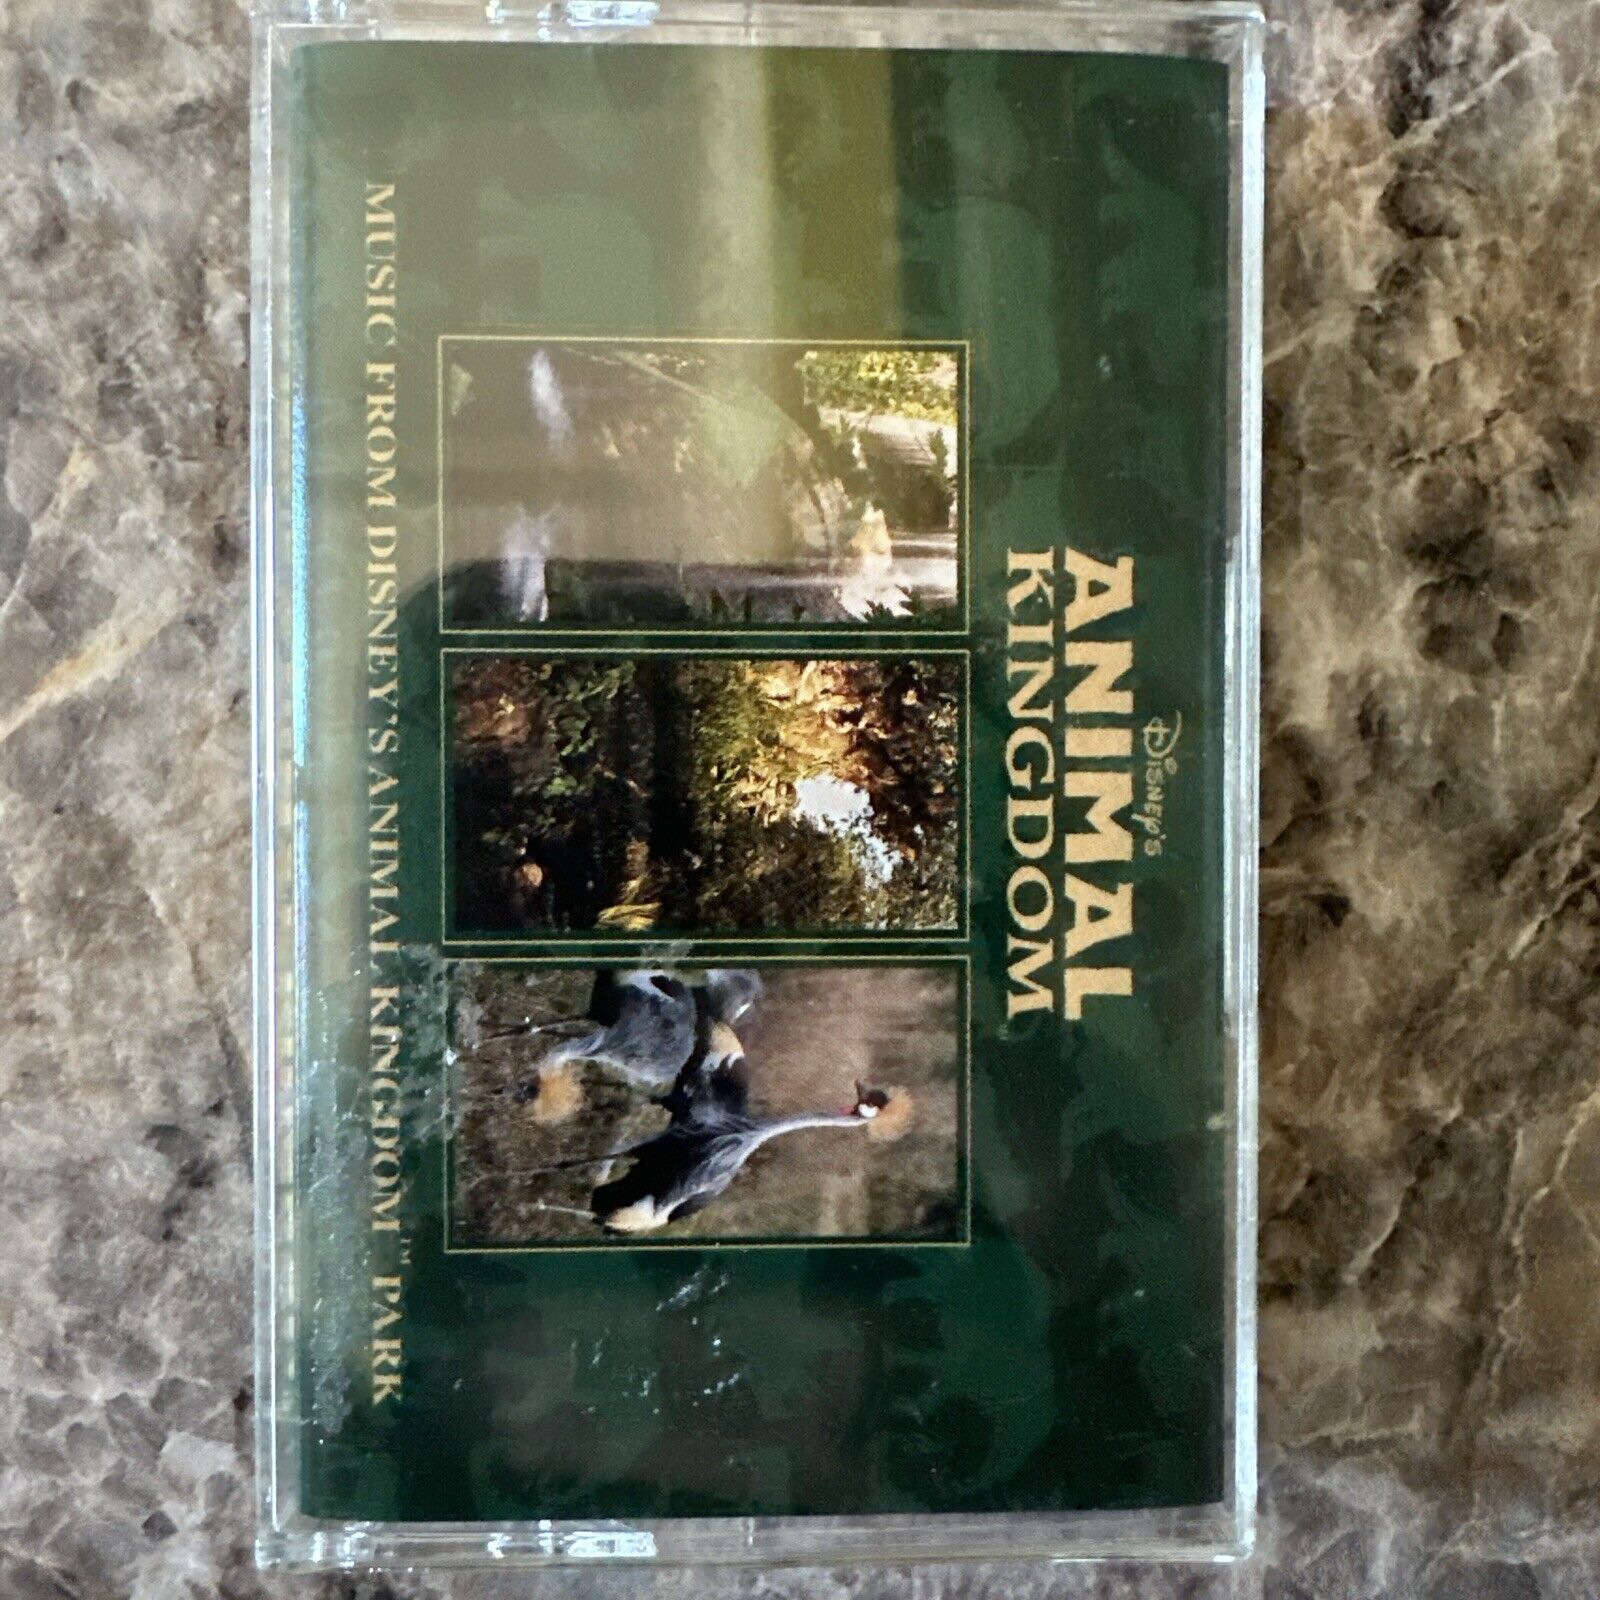 Disney’s Animal Kingdom Cassette 1998 Music From Disney’s Animal Kingdom Park